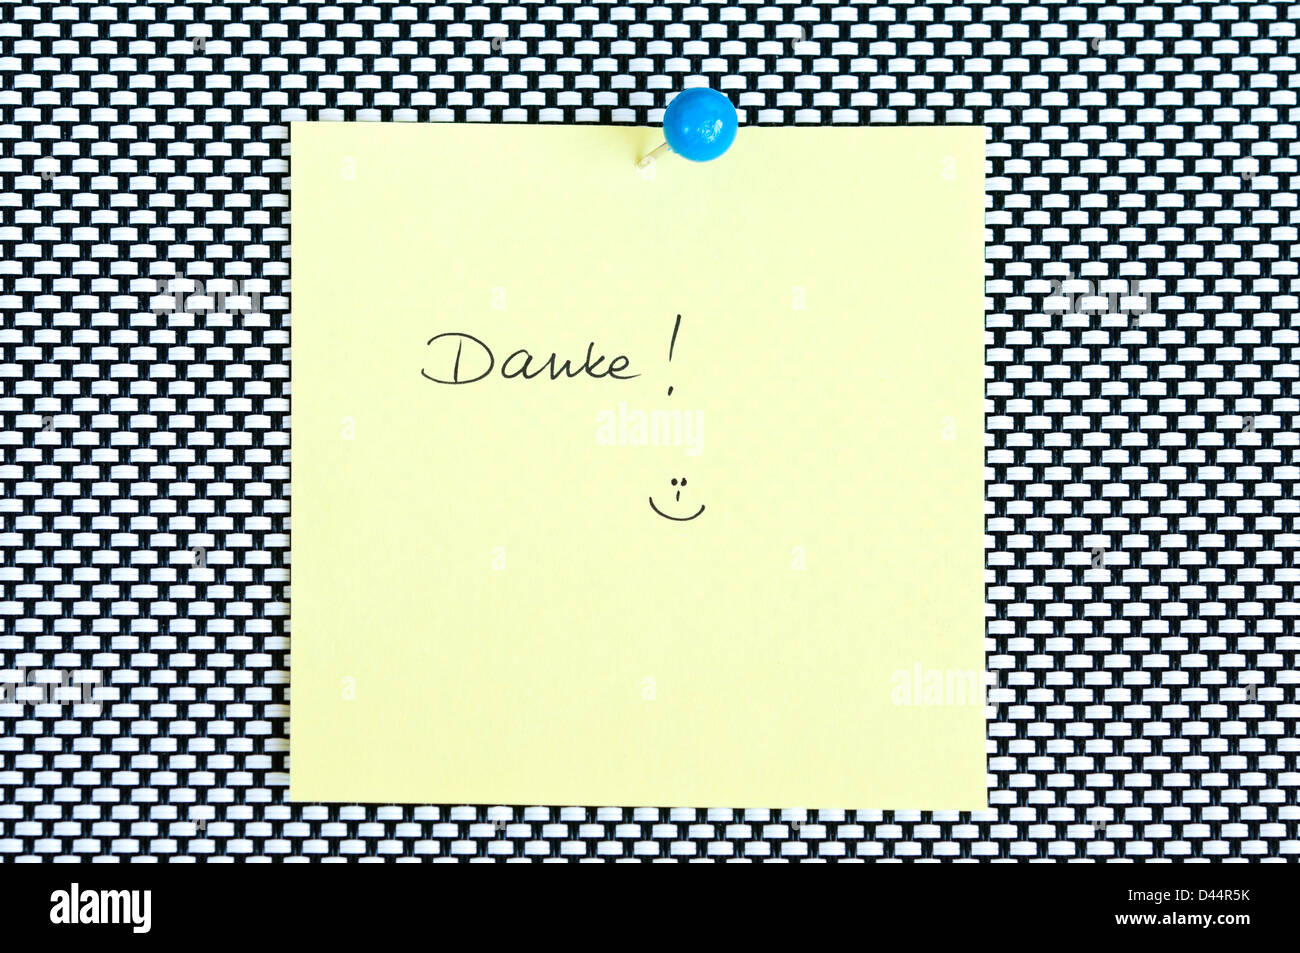 Postit note saying Danke arranged on black and white background Stock Photo